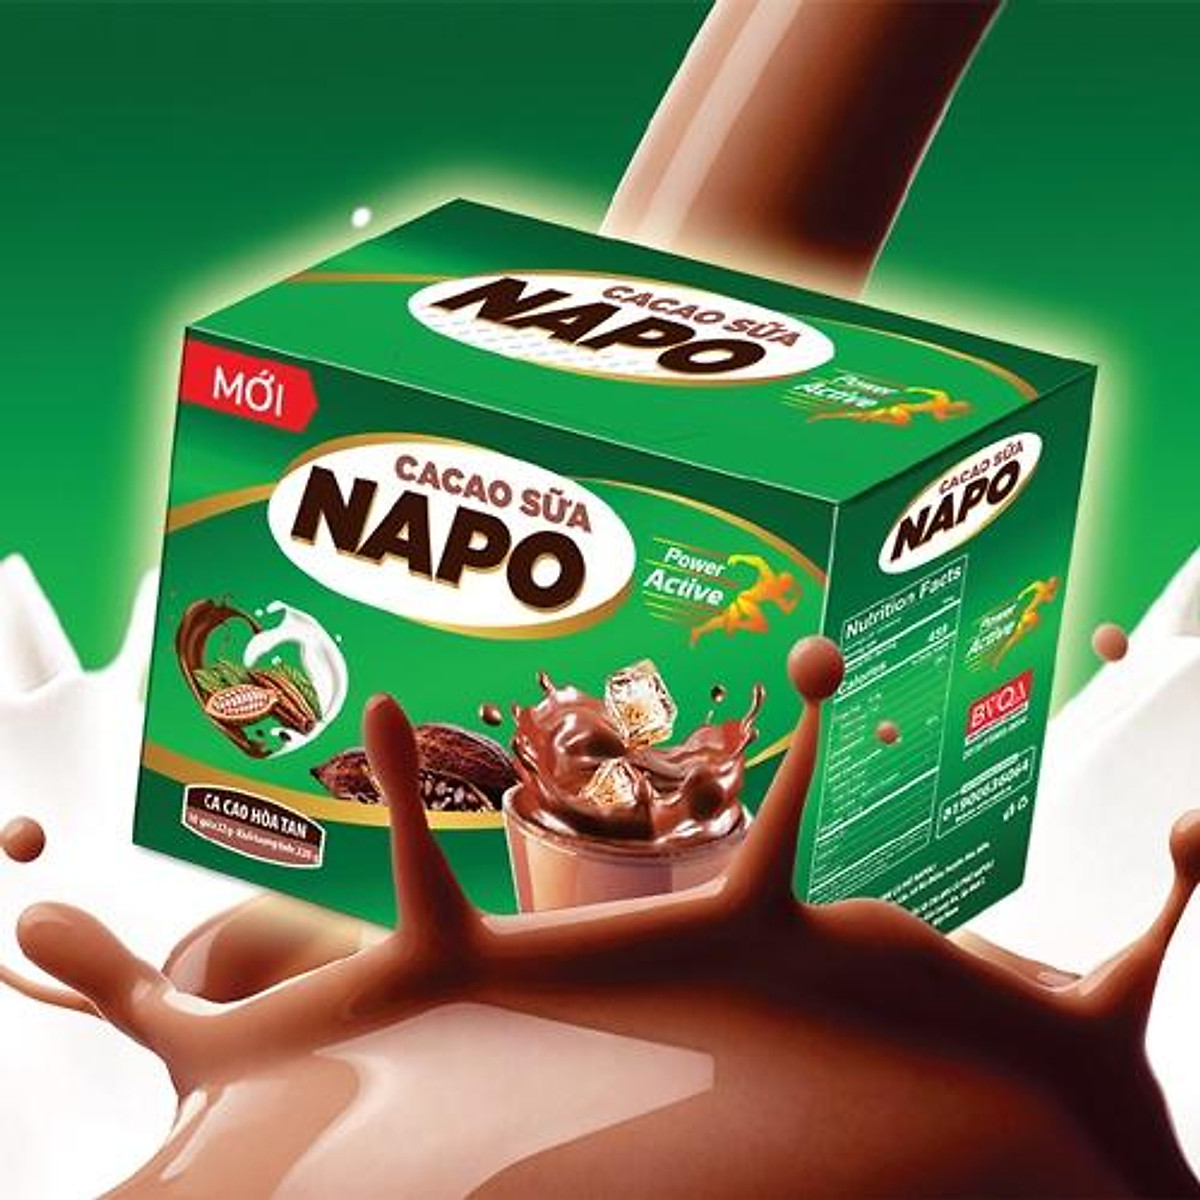 tin-tuc-napoli-kham-pha-huong-vi-tuyet-hao-cua-ca-cao-sua-napoli-cocoa-with-milk